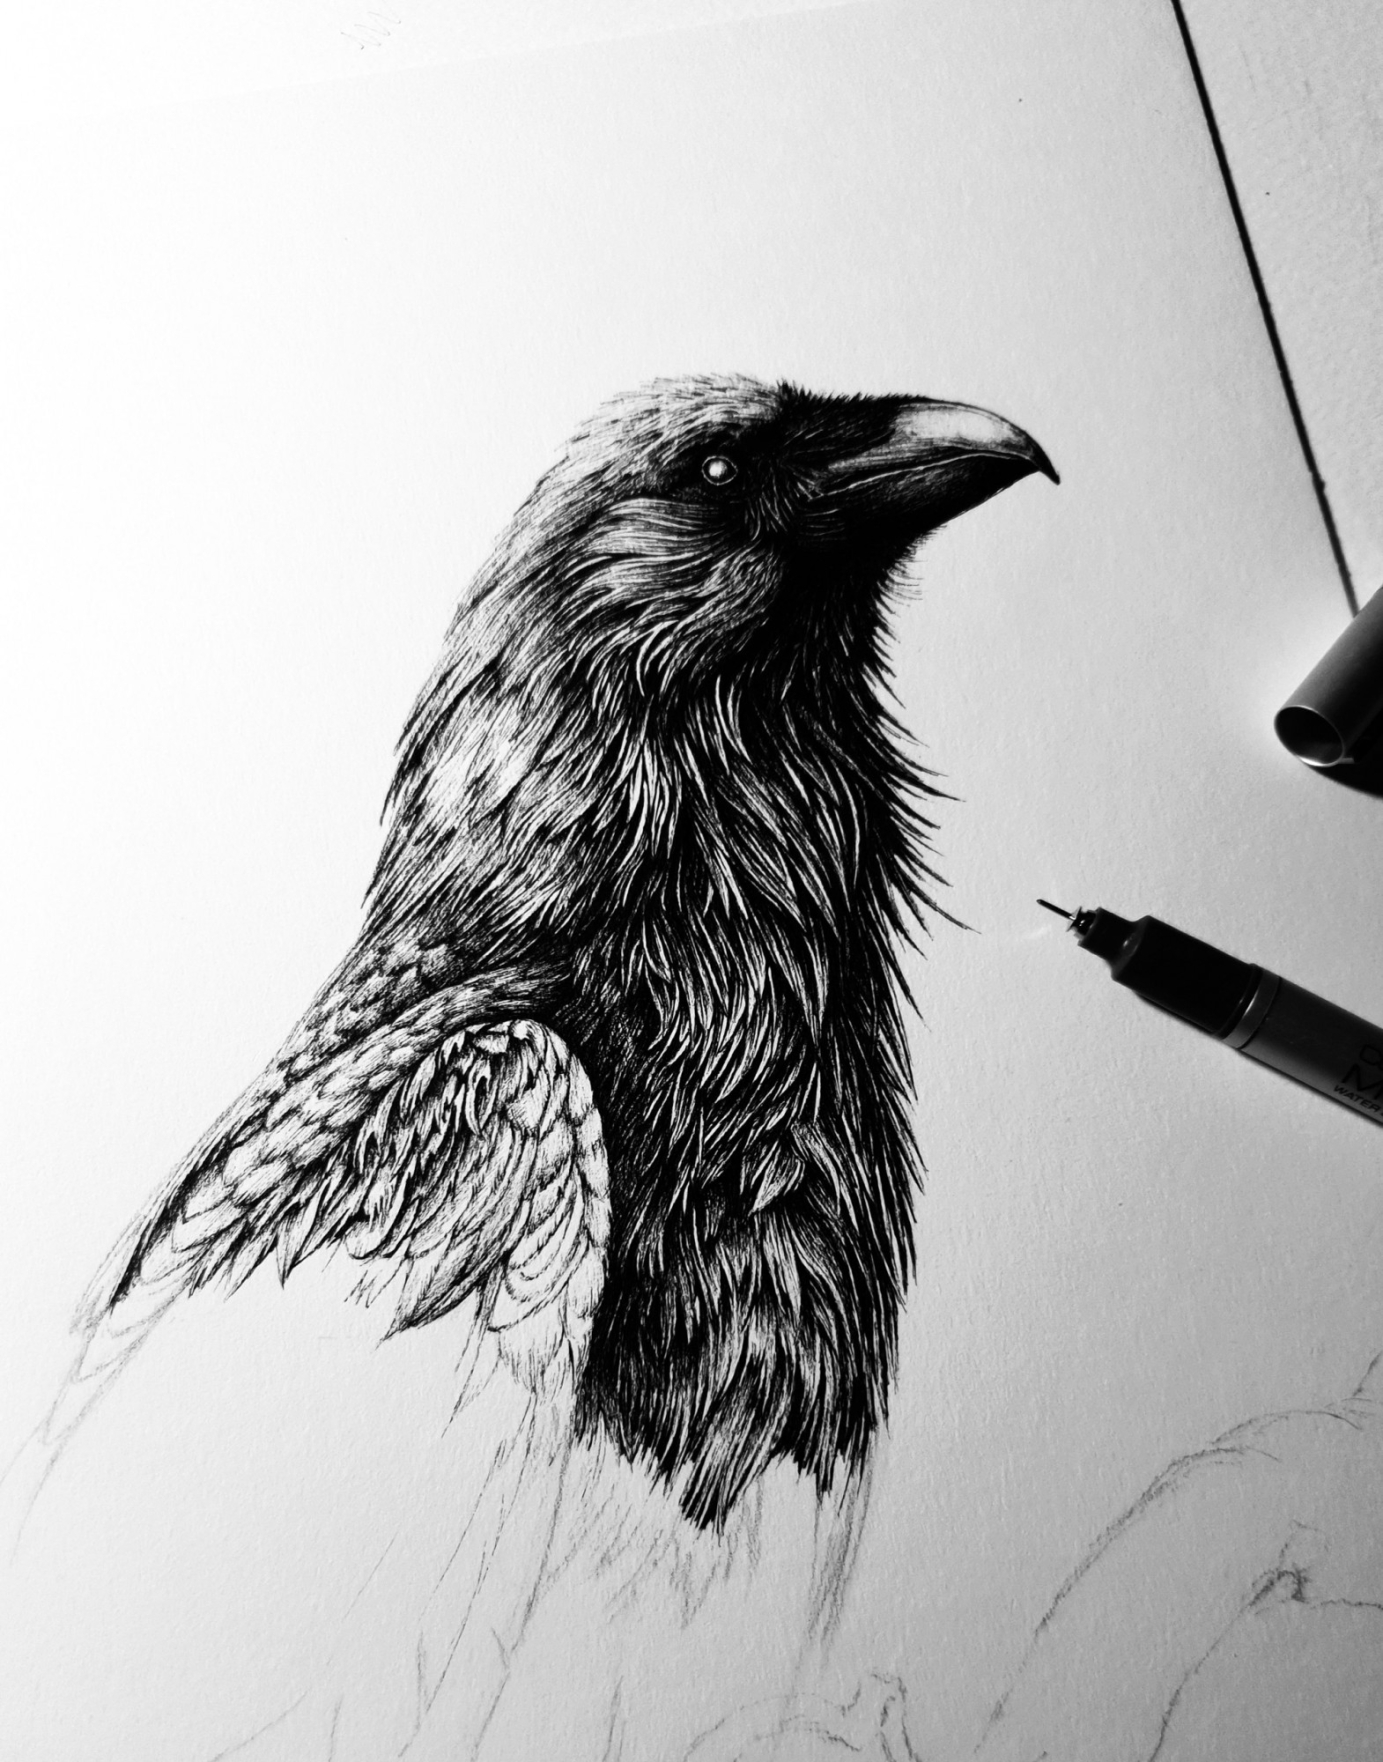 Birds in pen & ink